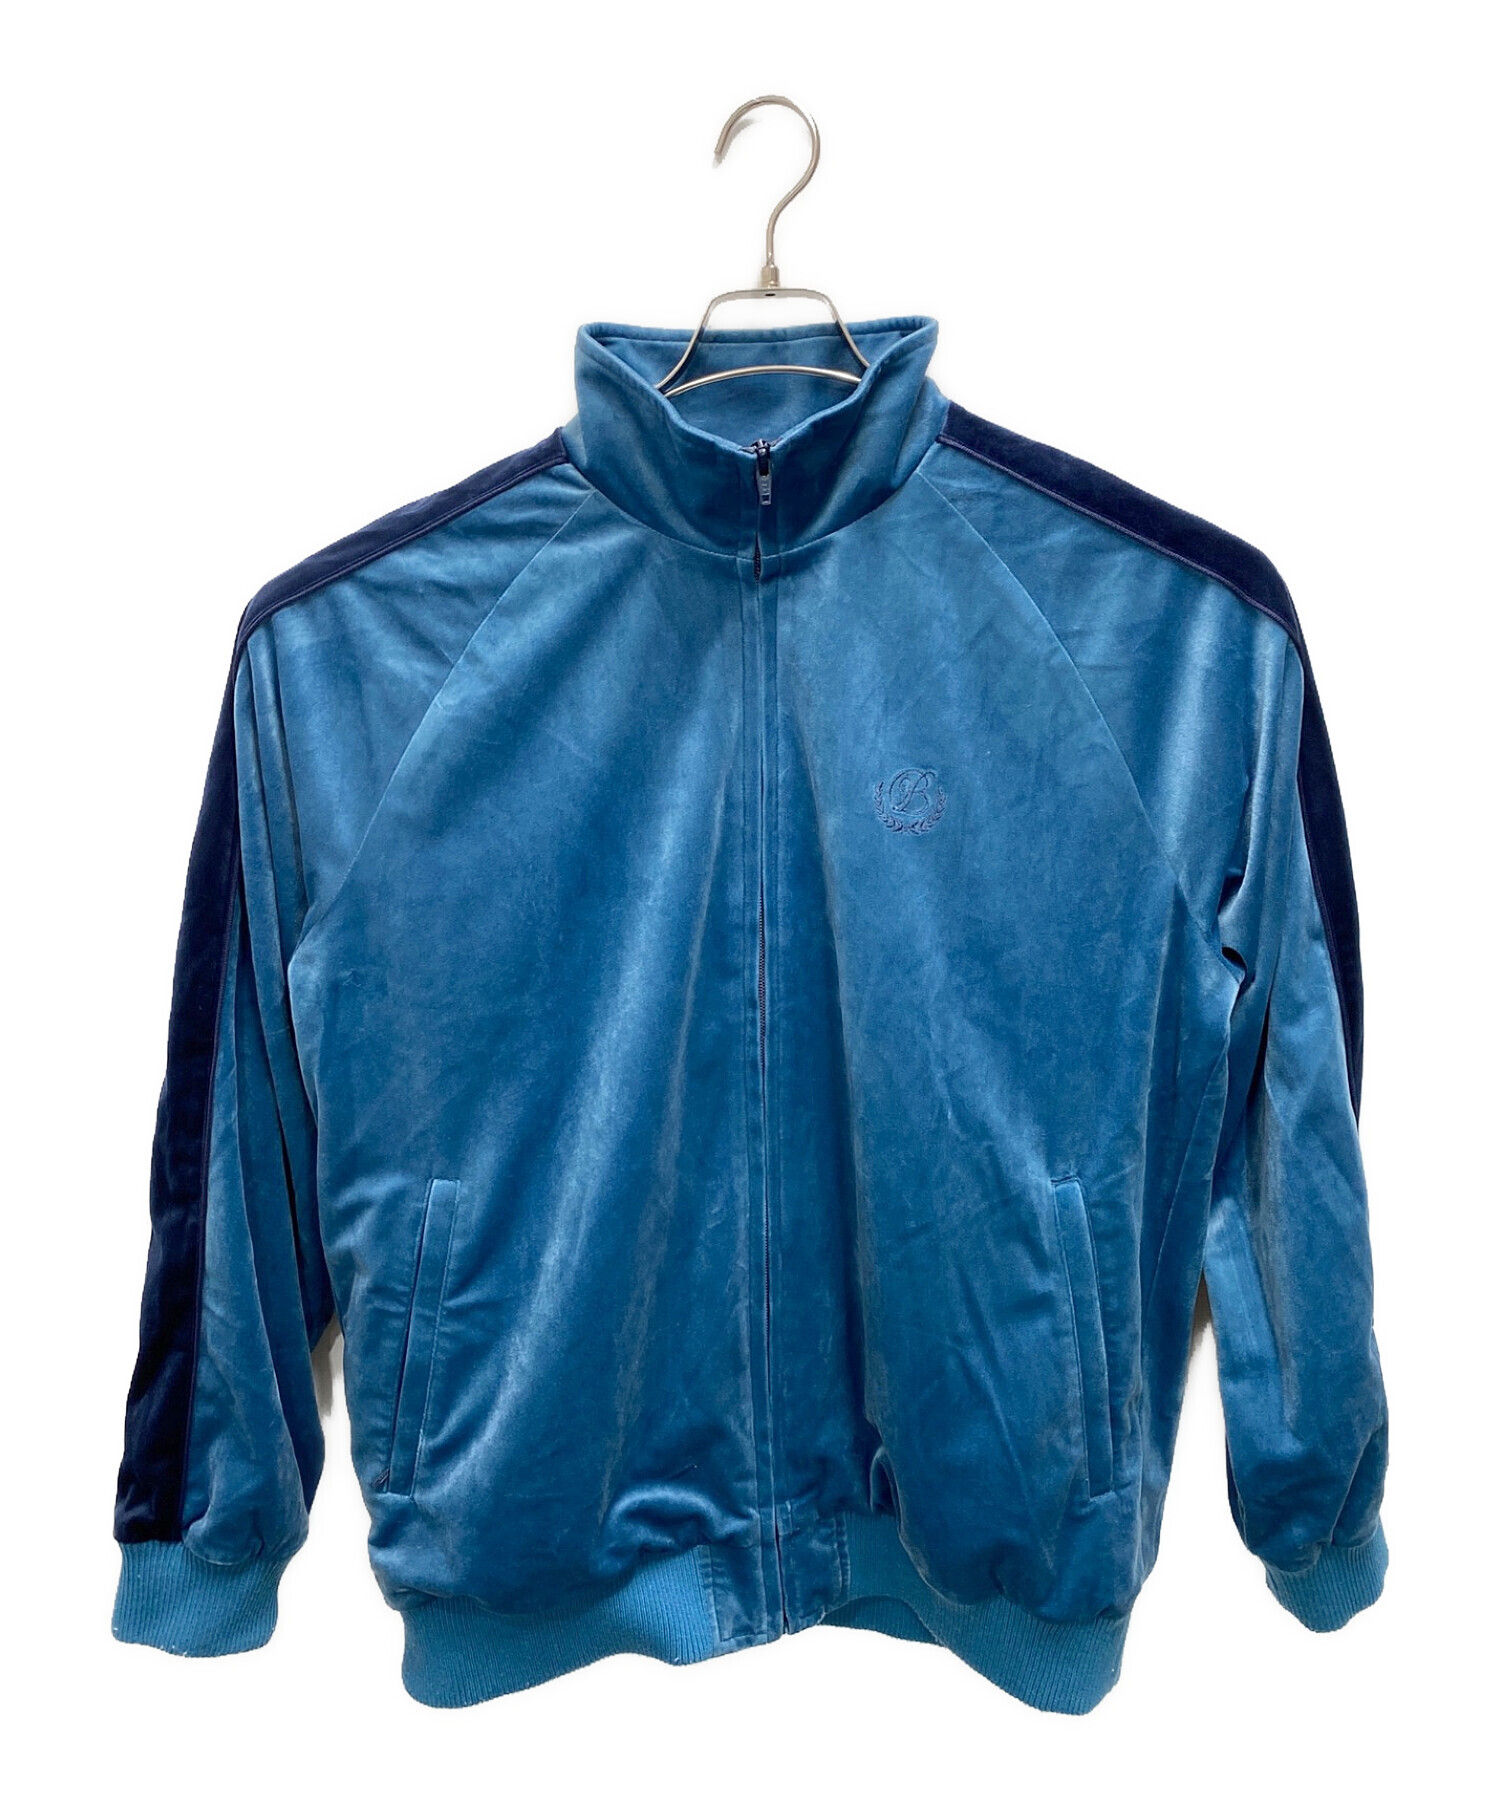 BlackEyePatch (ブラックアイパッチ) ベロアトラックジャケット ブルー サイズ:M